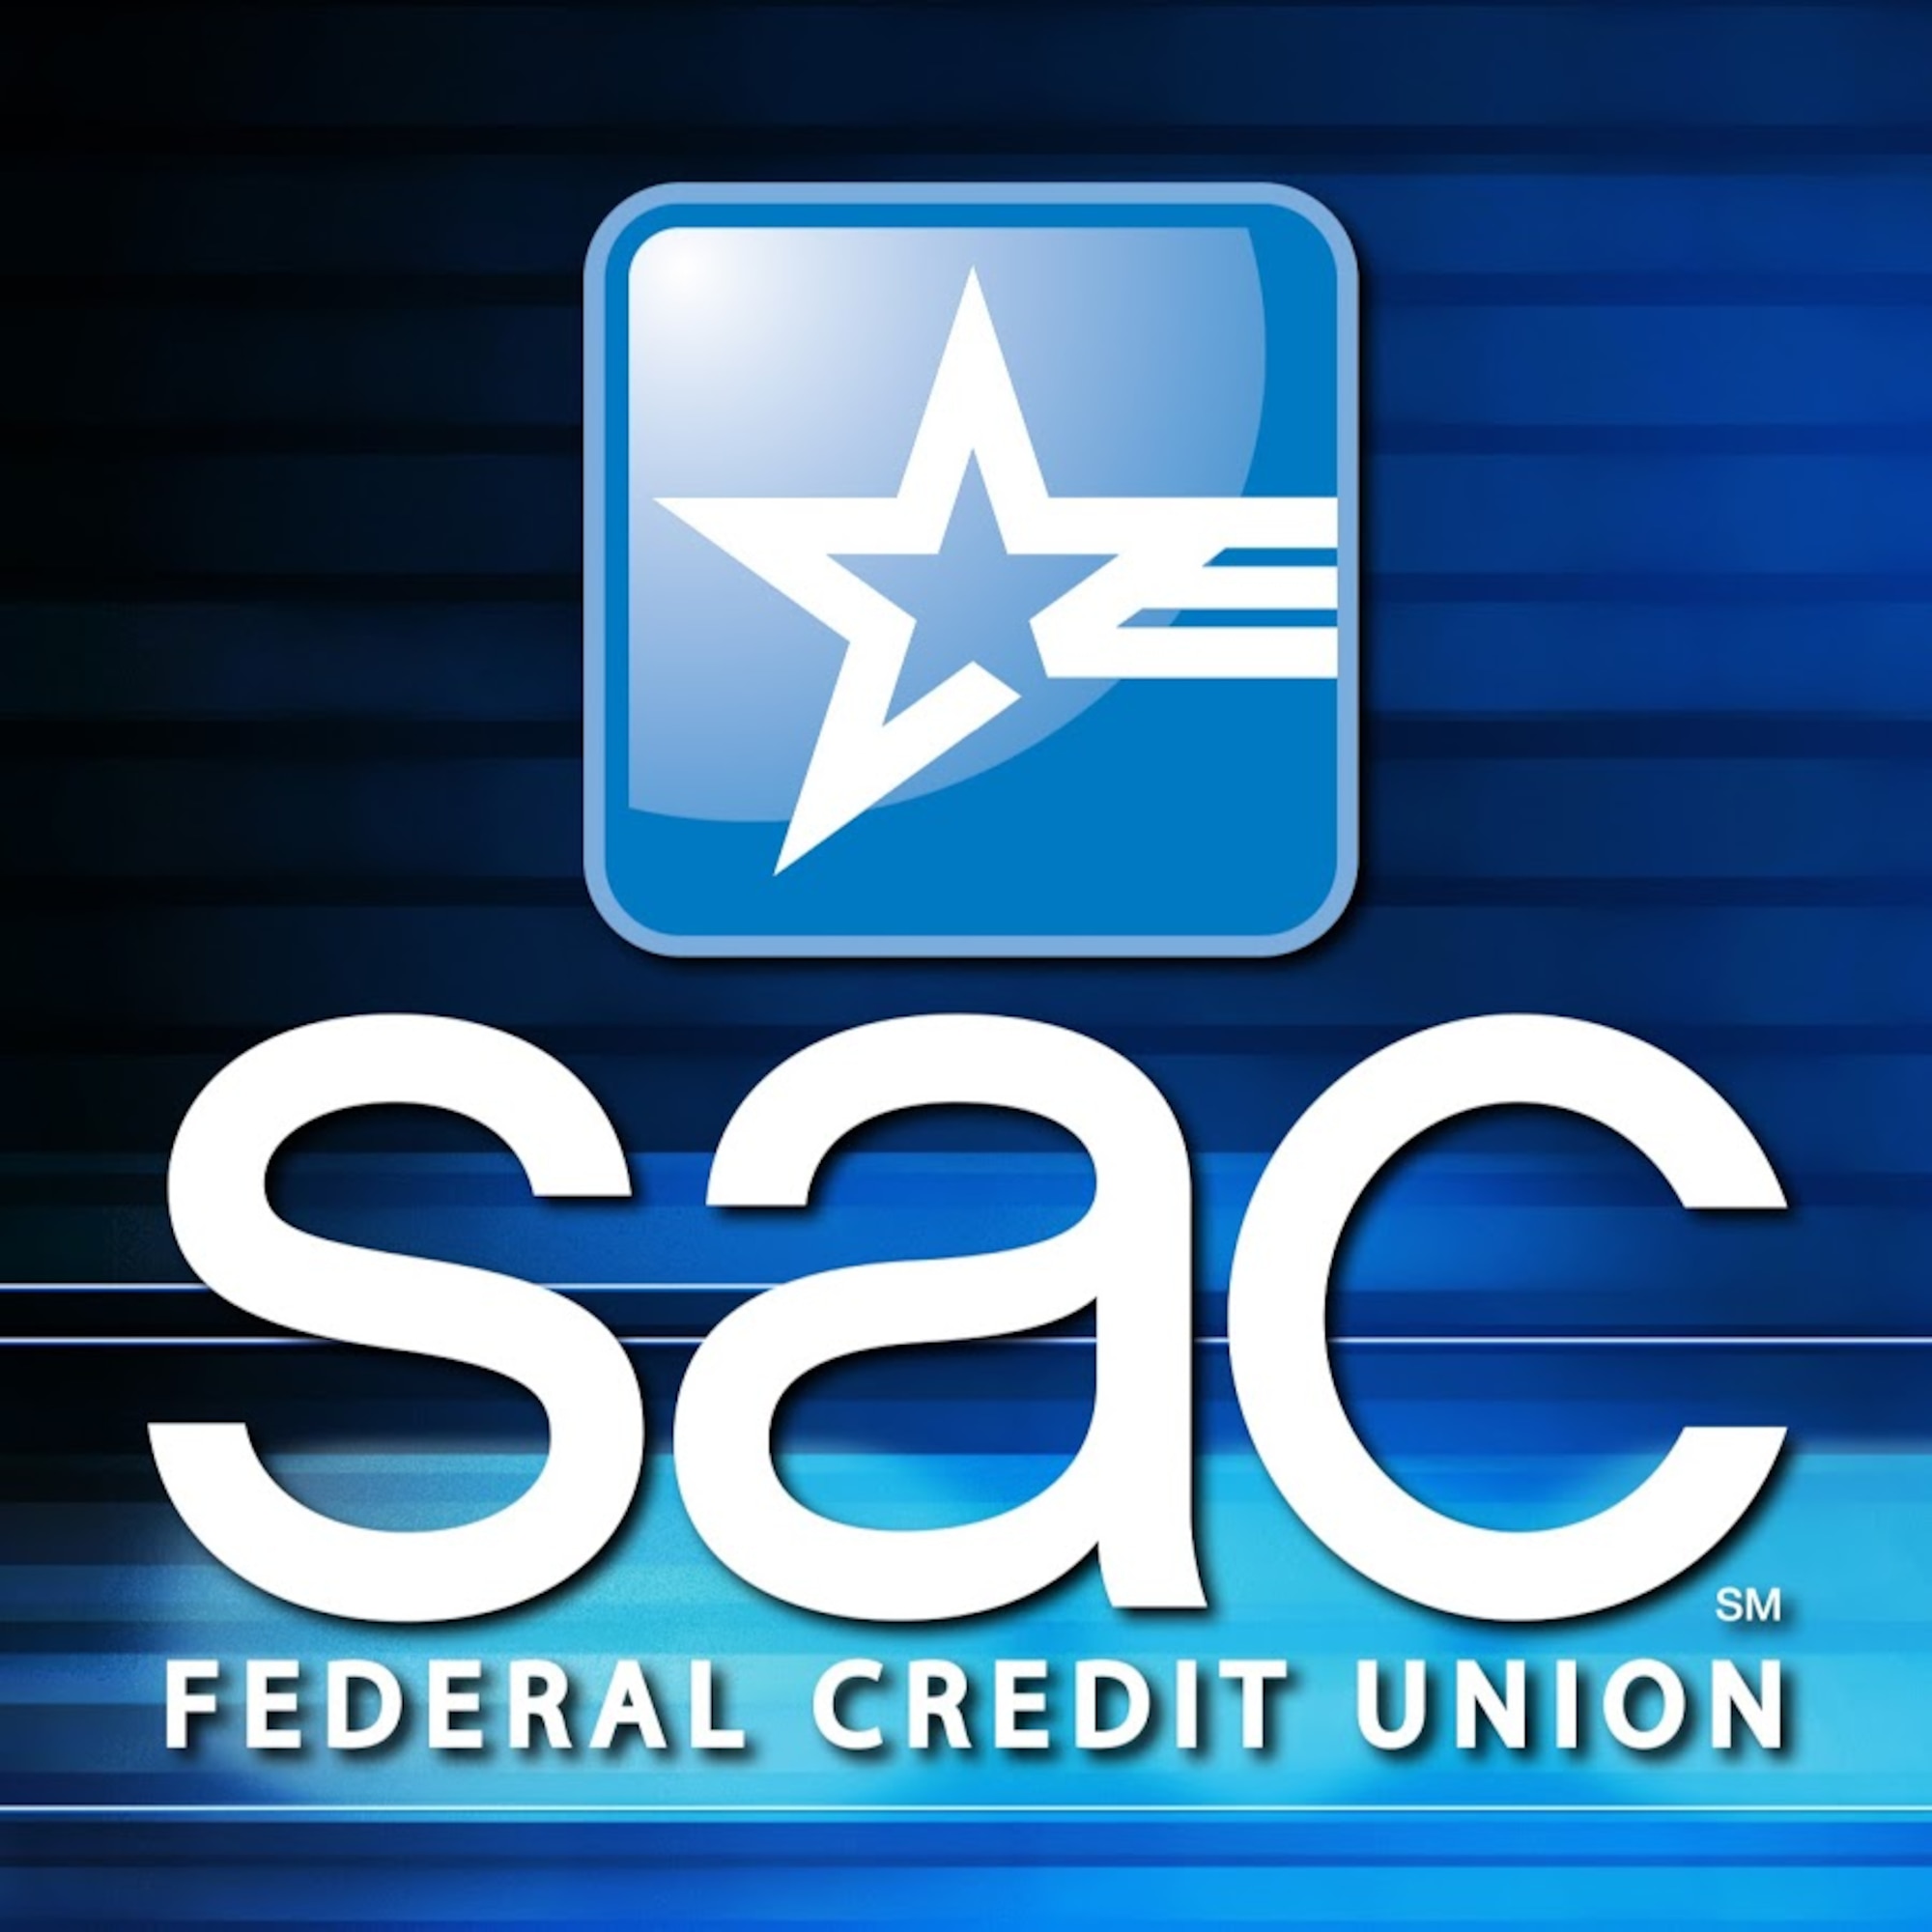 SAC Federal Credit Union logo